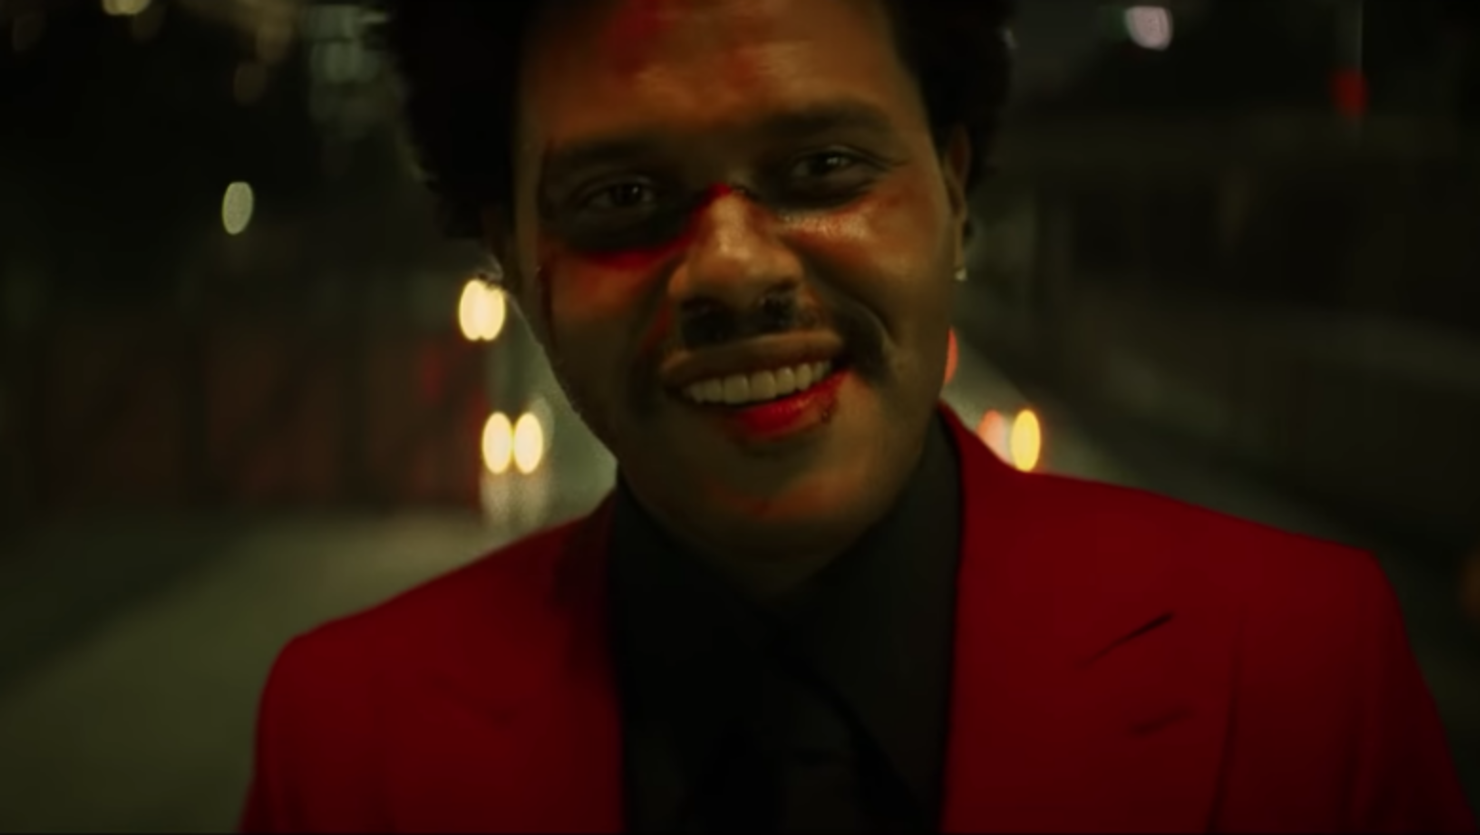 The Weeknd Blinding Lights. Weeknd 2020 Blinding Lights. The Weeknd Blinding Lights обложка. Певец де викенд.